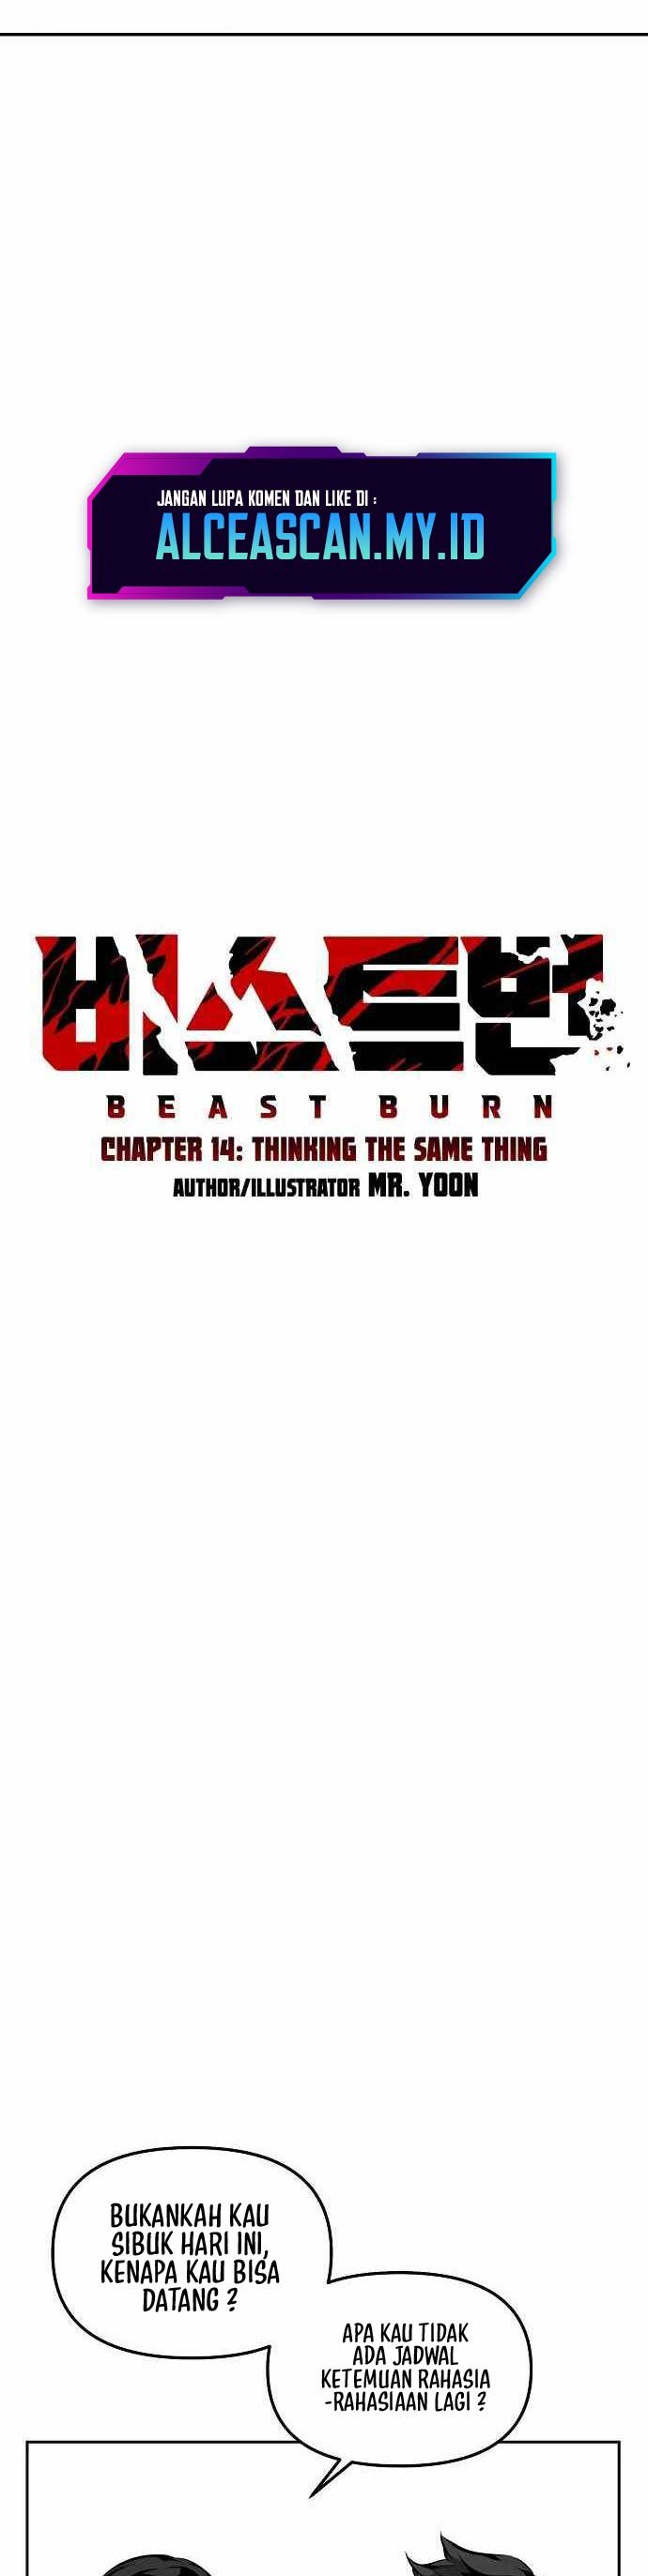 Beastburn Chapter 14